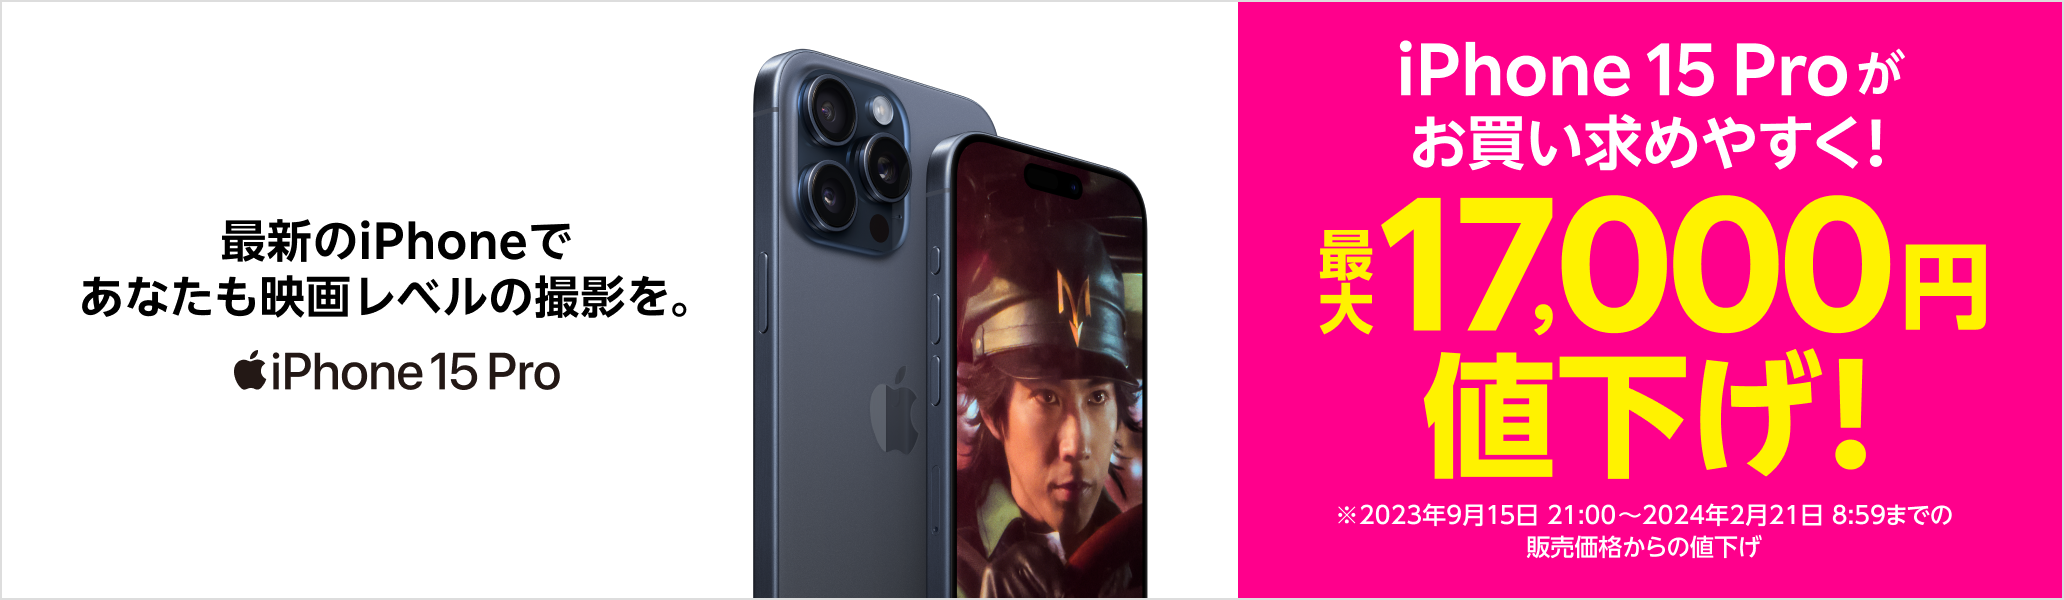 最新のiPhoneであなたも映画レベルの撮影を。iPhone 15 Proがお買い求めやすく！最大17,000円値下げ！※2023年9月15日21:00~2024年2月21日8:59までの販売価格からの値下げ